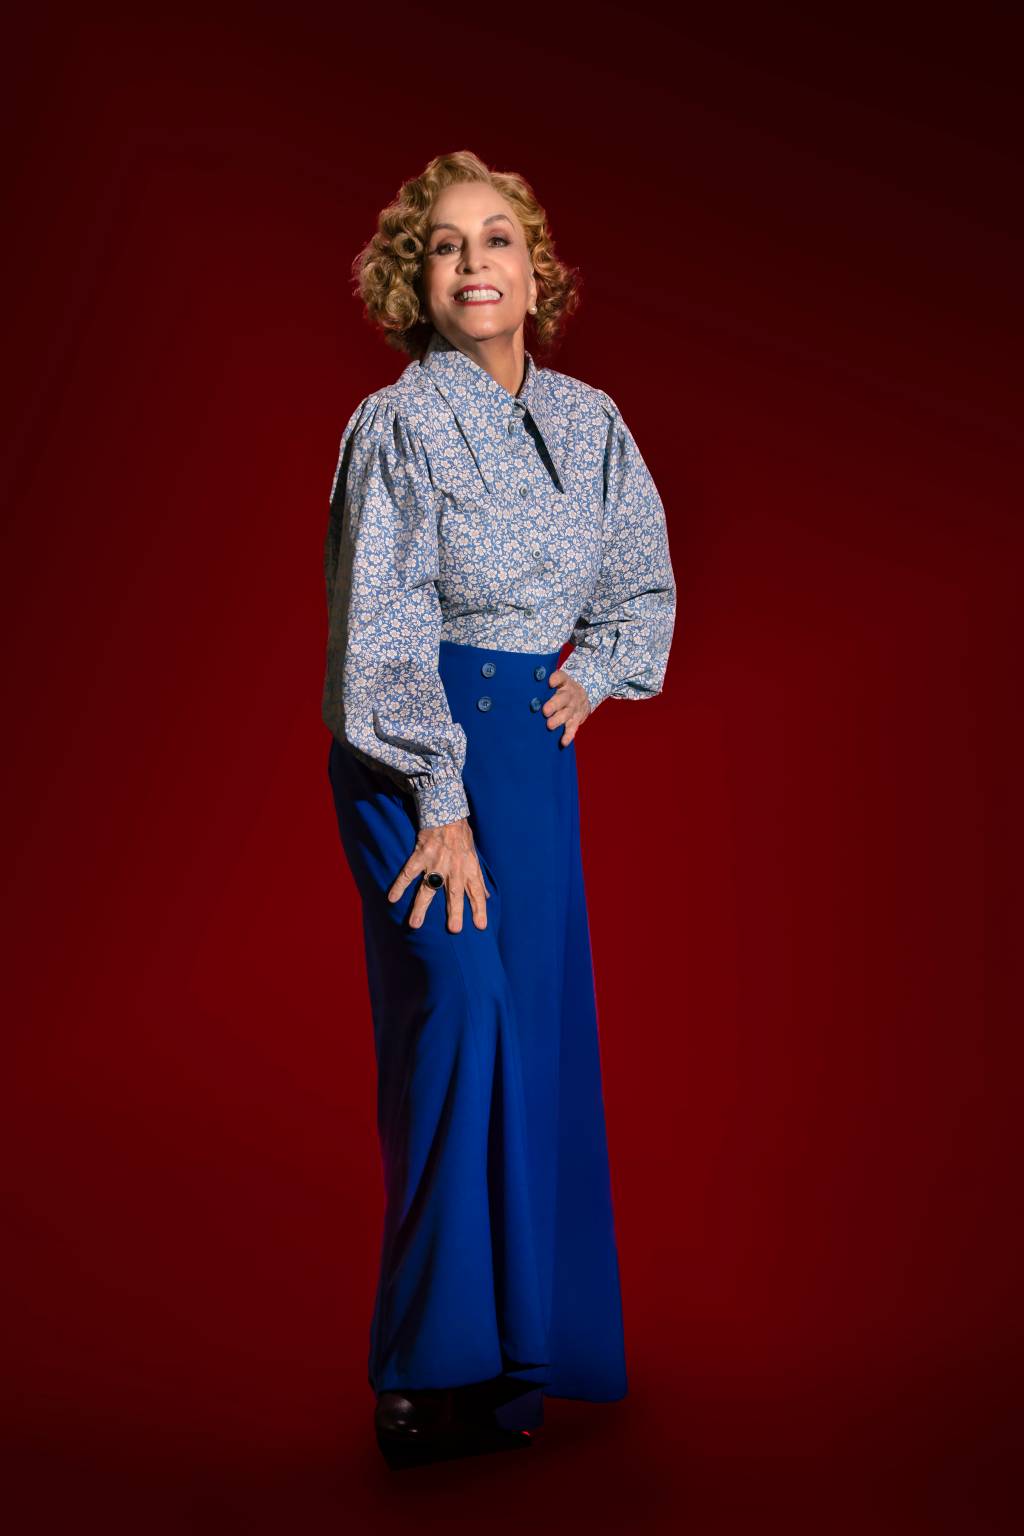 Senhora branca de cabelos grisalhos posa em fundo vermelho vestindo saia azul escuro e camisa azul claro. Ela sorri e apoia uma das mãos na perna.